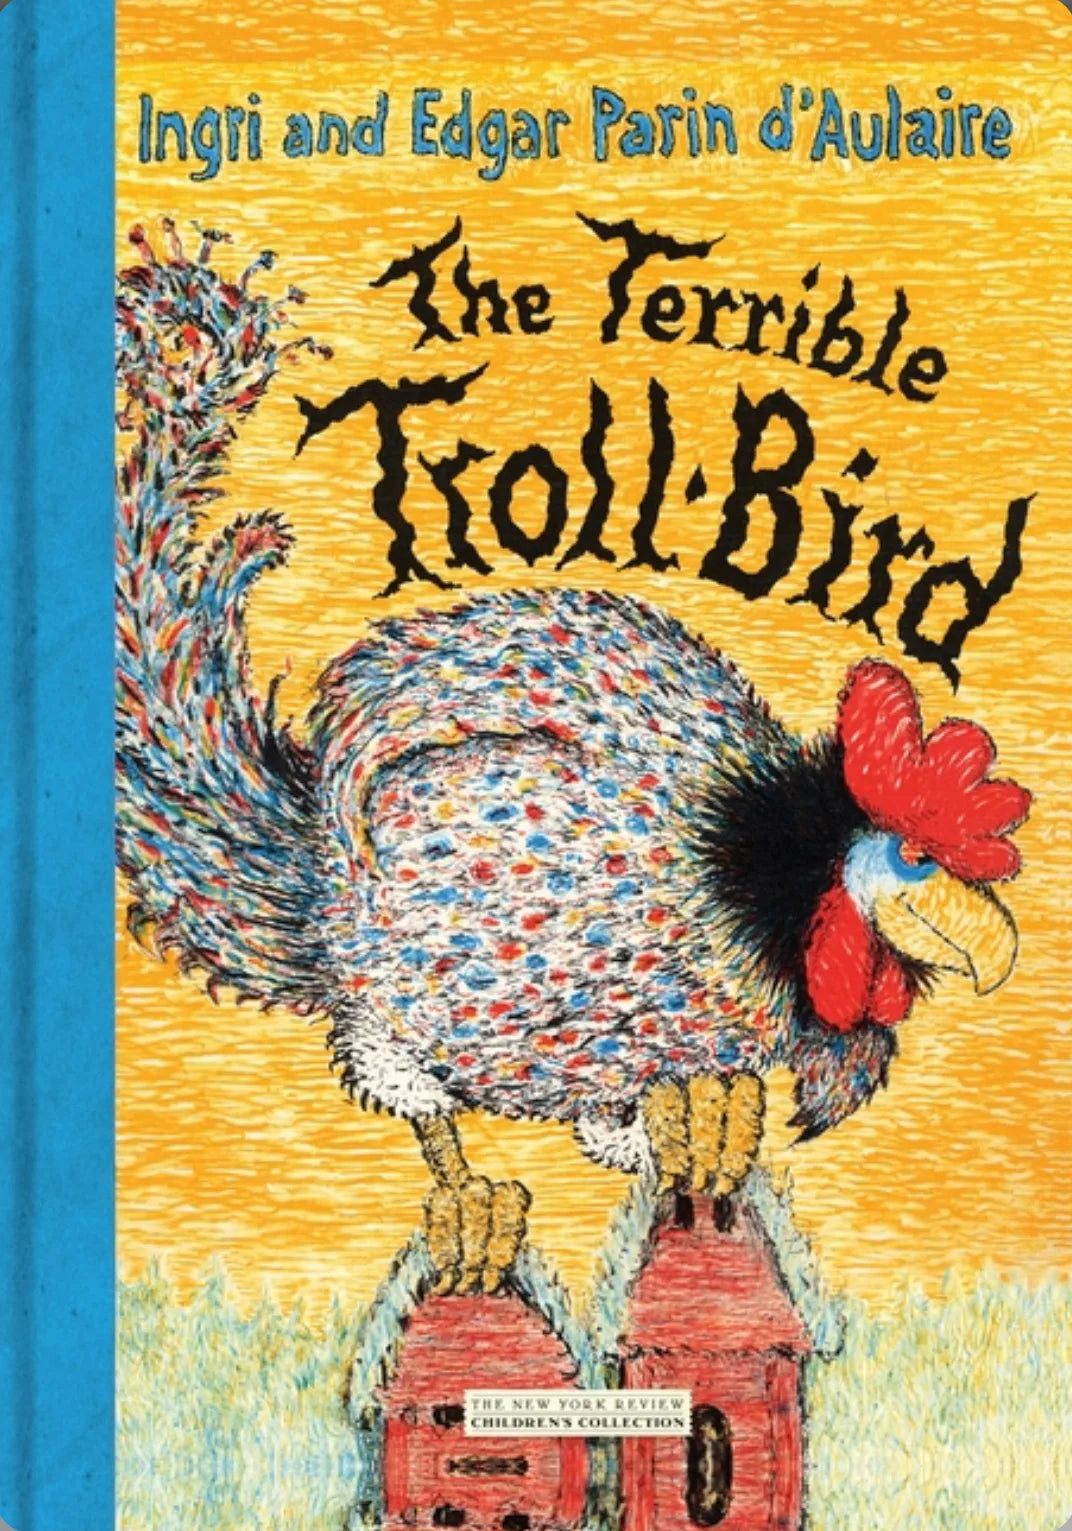 The Terrible Troll Bird - Scandinavian Myths for Kids